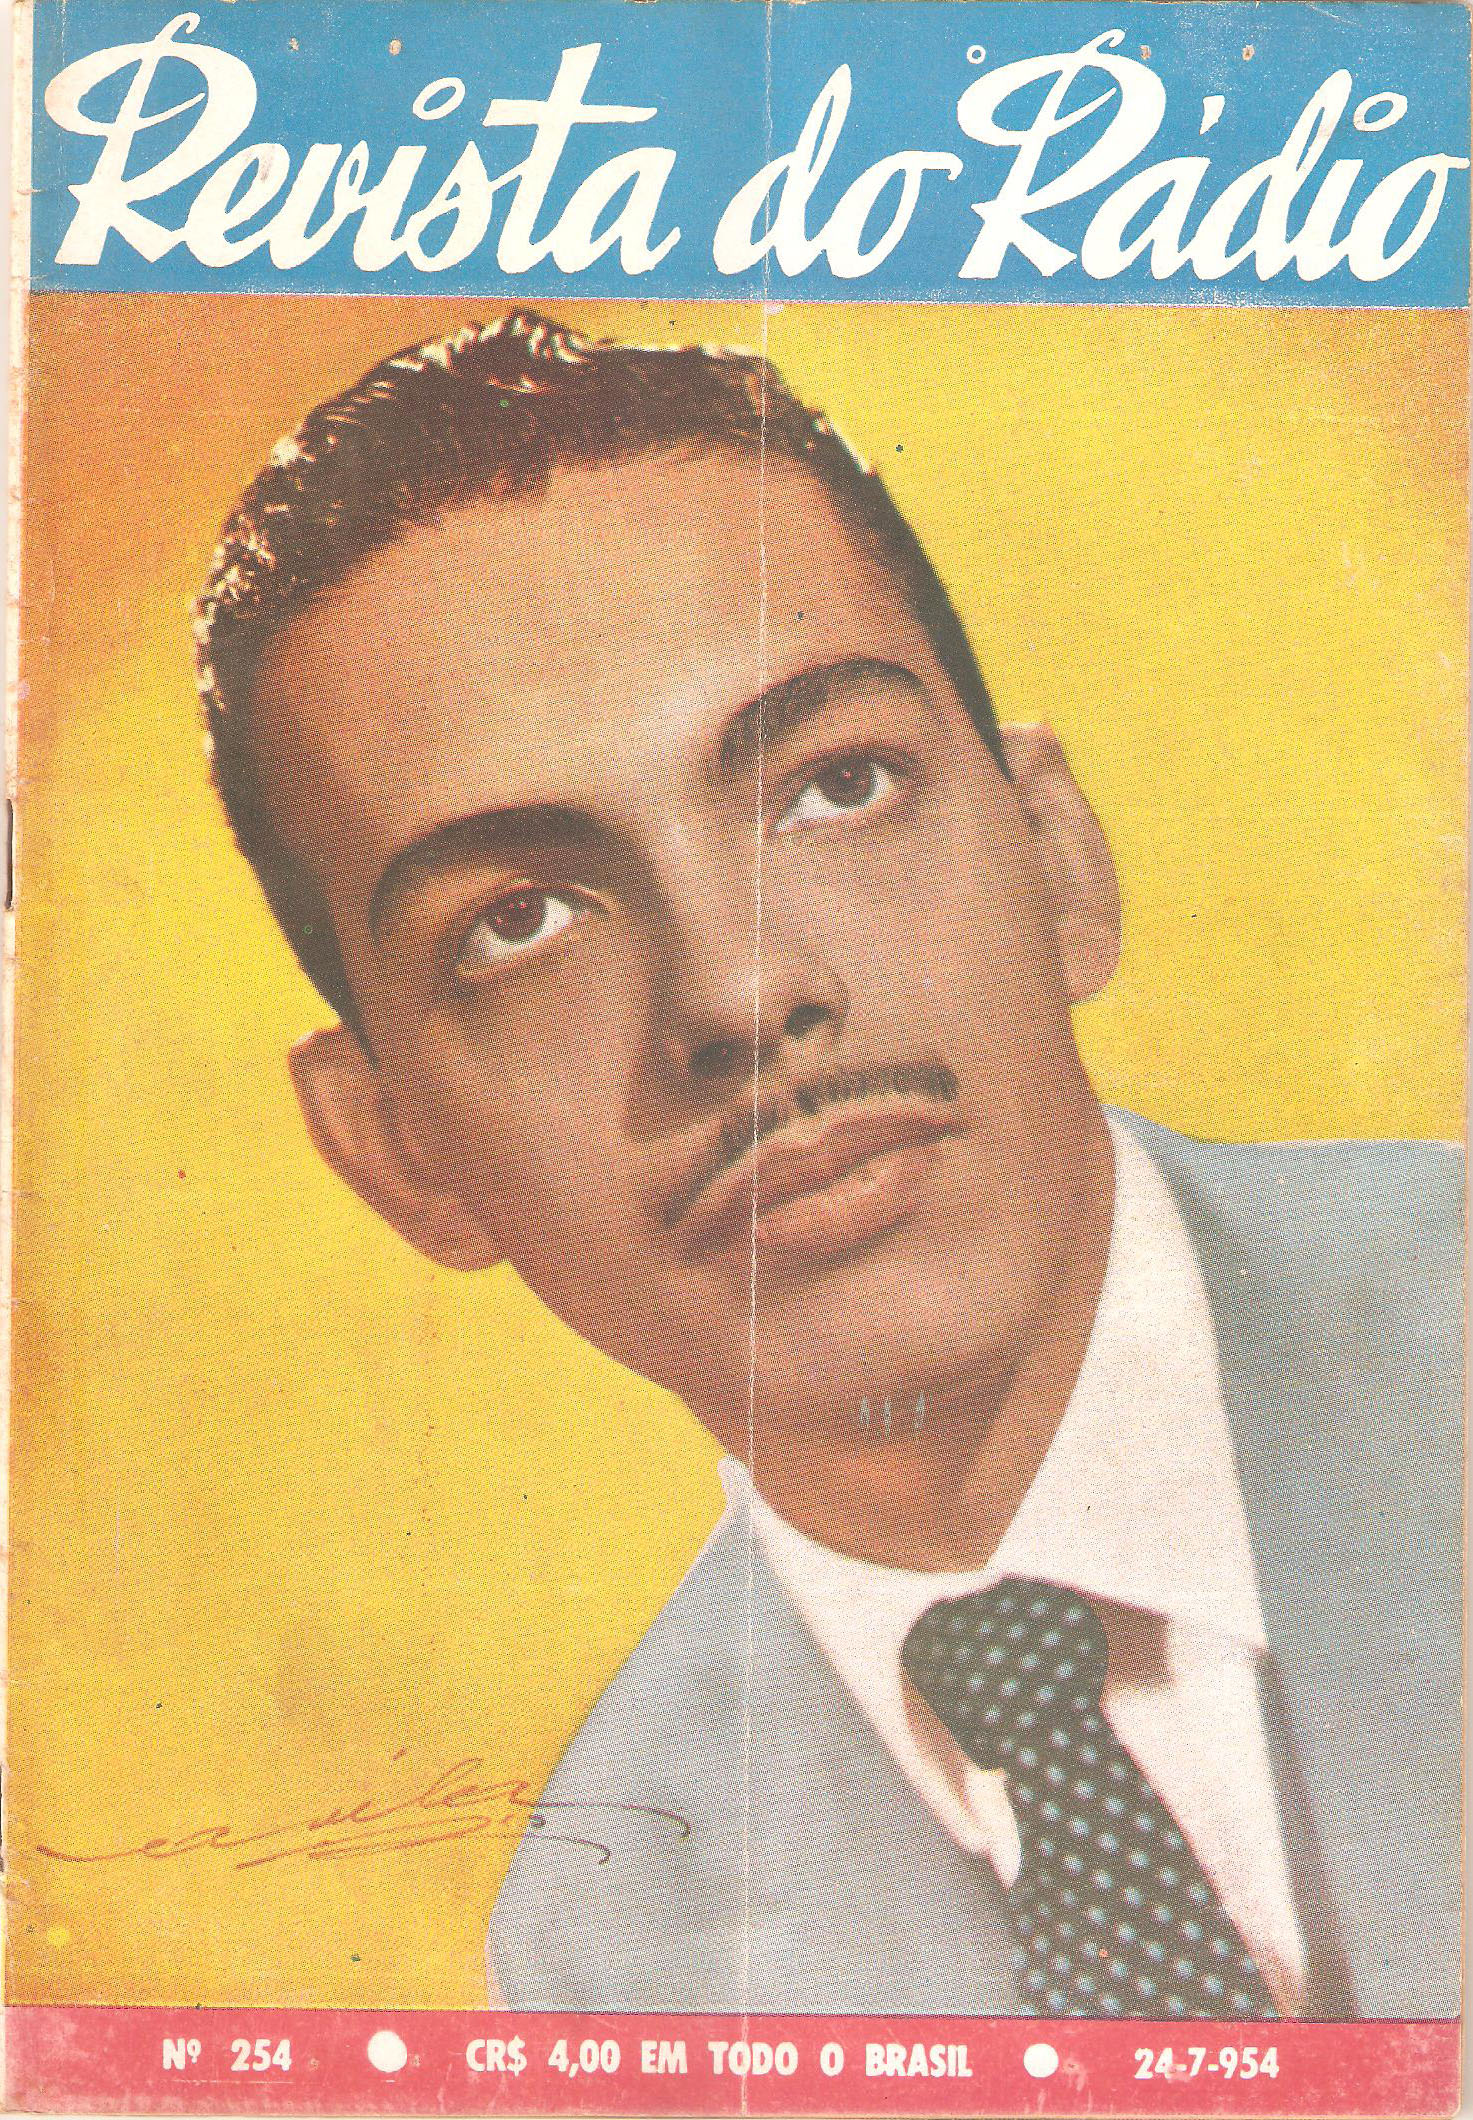 O jovem Cauby aos 23 anos, em 1954, pela primeira vez  capa da Revista do Rdio. Ele foi o cantor mais retratado na capa da publicao<a style='float:right;color:#ccc' href='https://www3.al.sp.gov.br/repositorio/noticia/N-05-2016/fg189396.jpg' target=_blank><i class='bi bi-zoom-in'></i> Clique para ver a imagem </a>